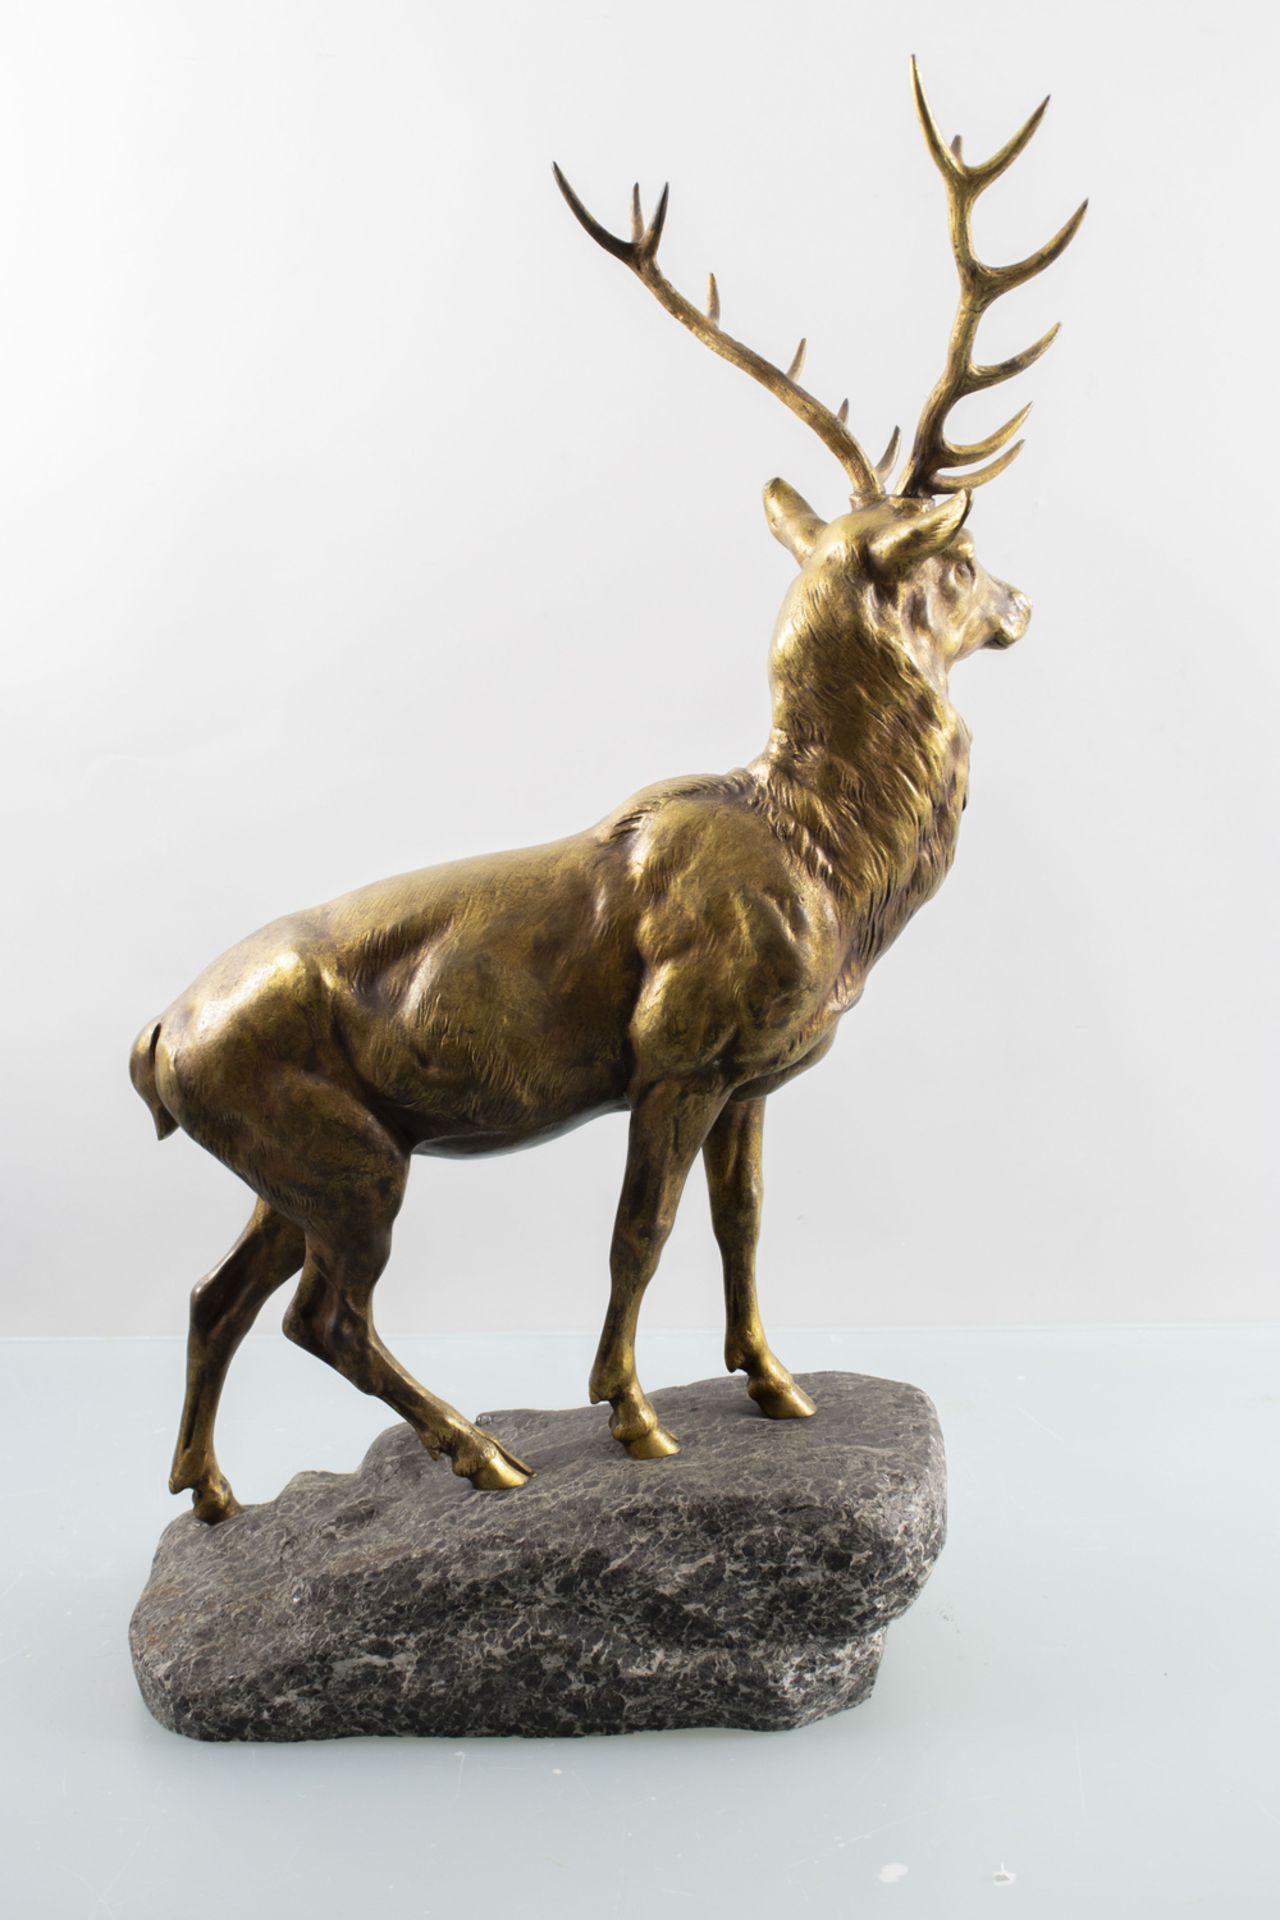 Bronzeskulptur 'Hirsch', 14 Ender - Bild 4 aus 4